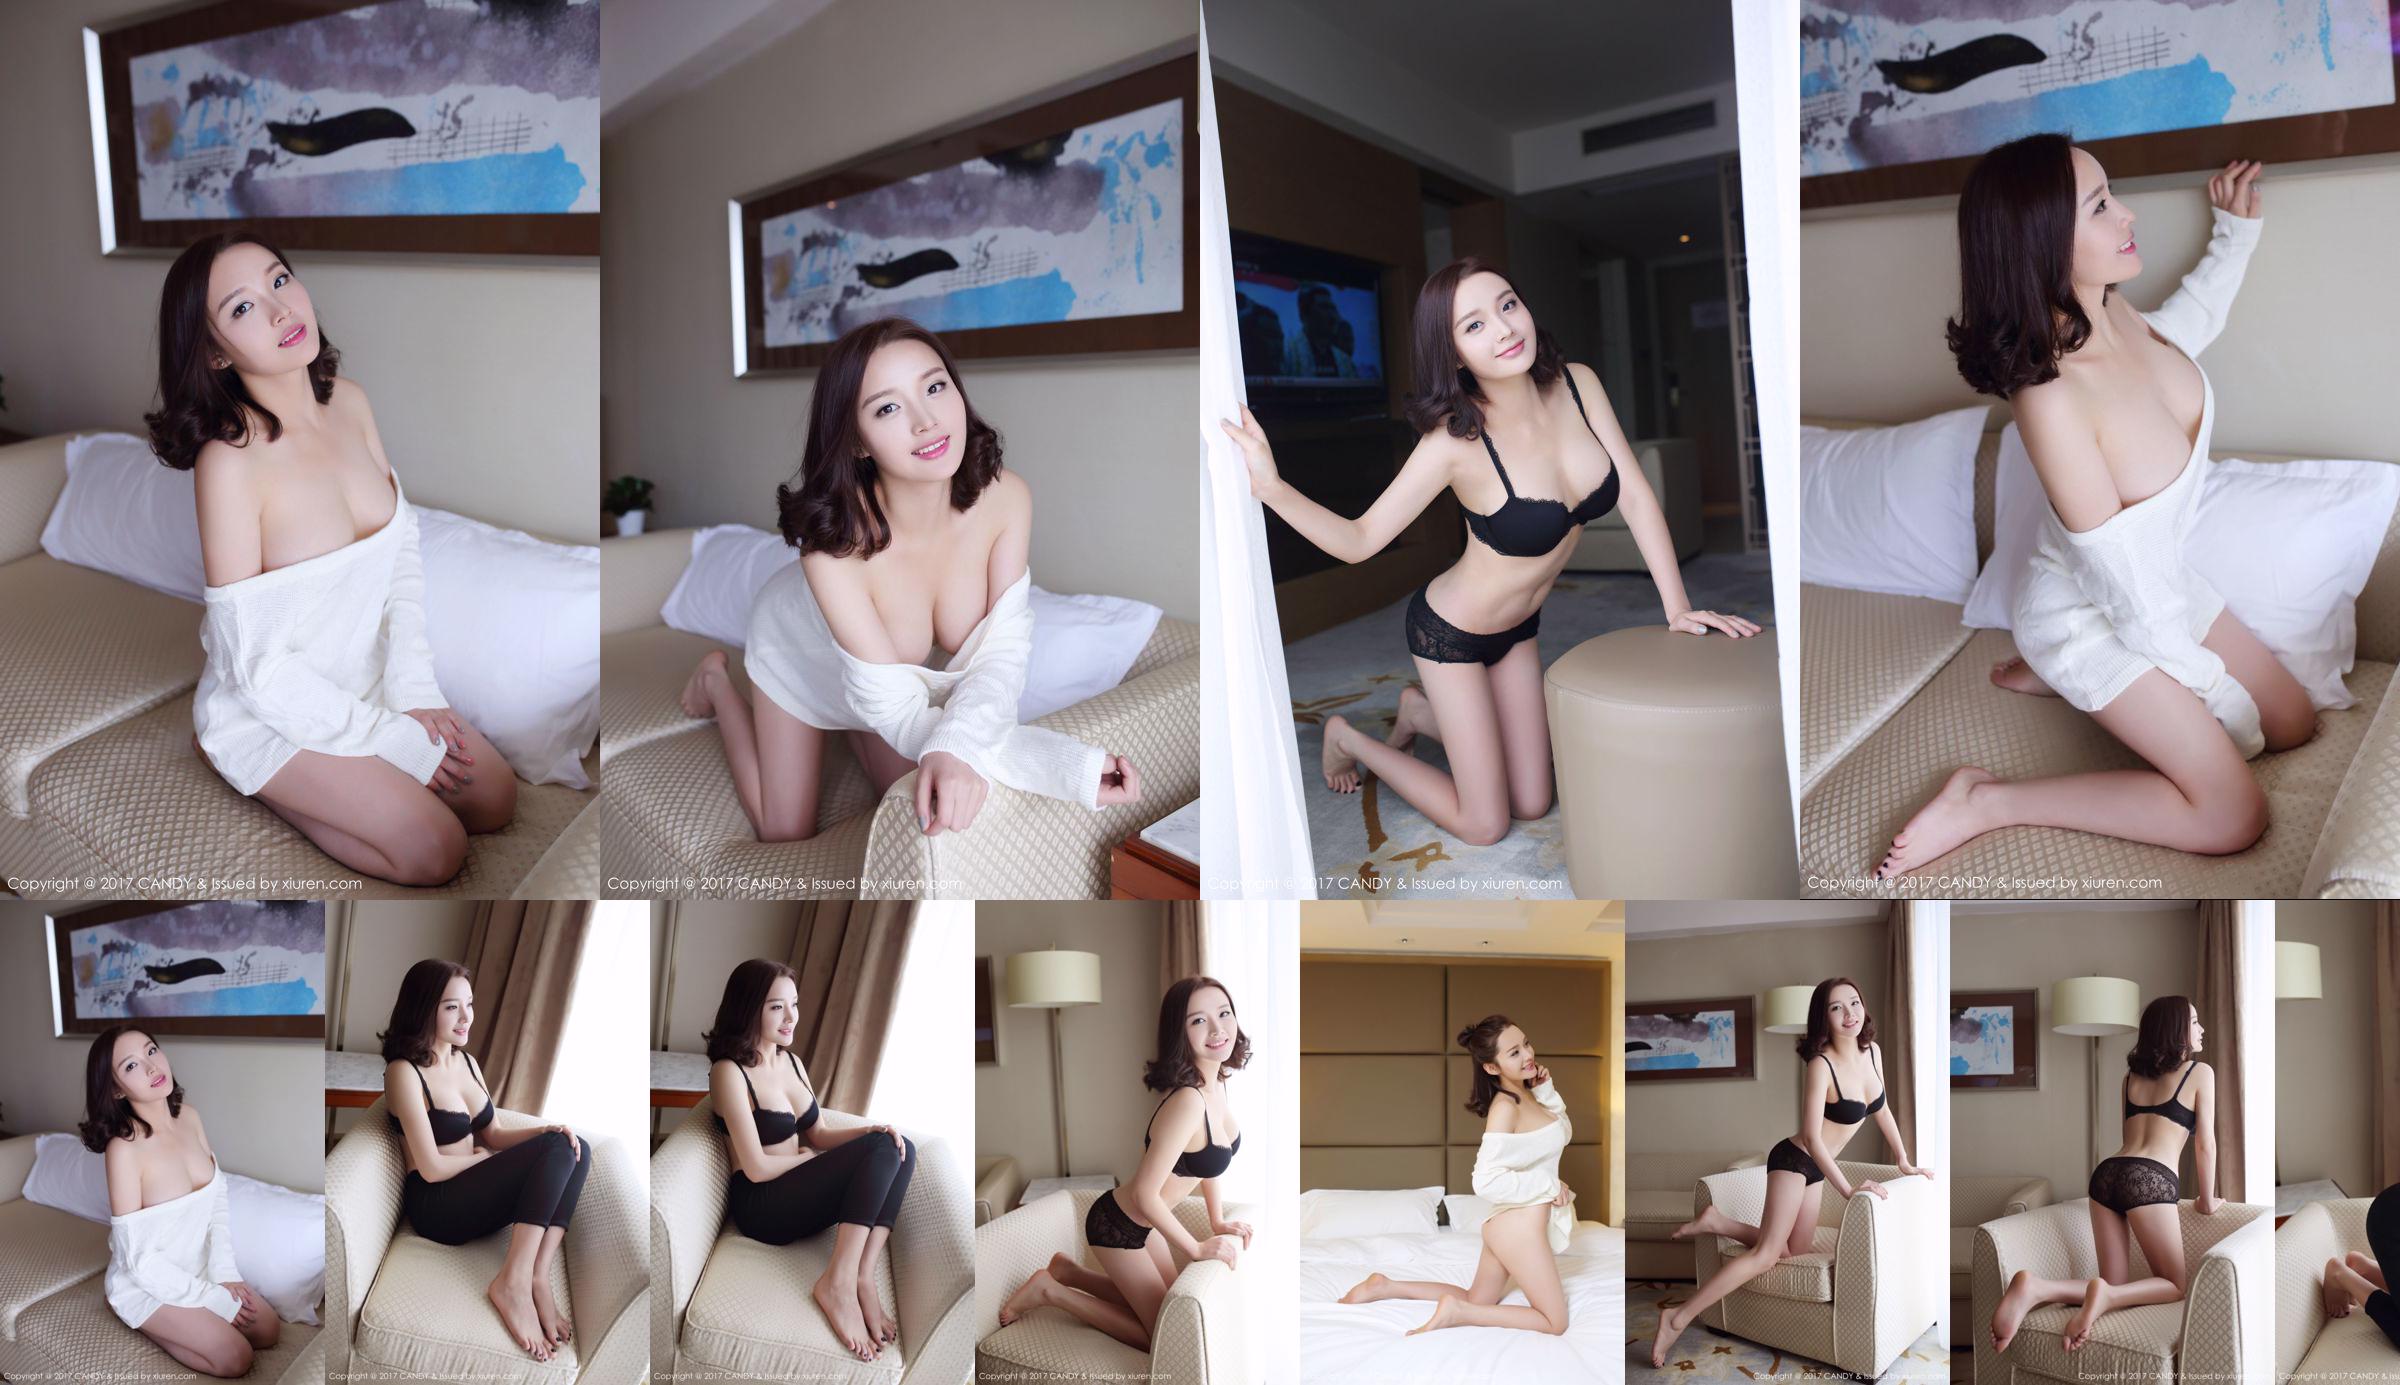 Wang Shiqi "Das schöne Mädchen von nebenan" [Candy Pictorial CANDY] Vol.033 No.636f70 Seite 2